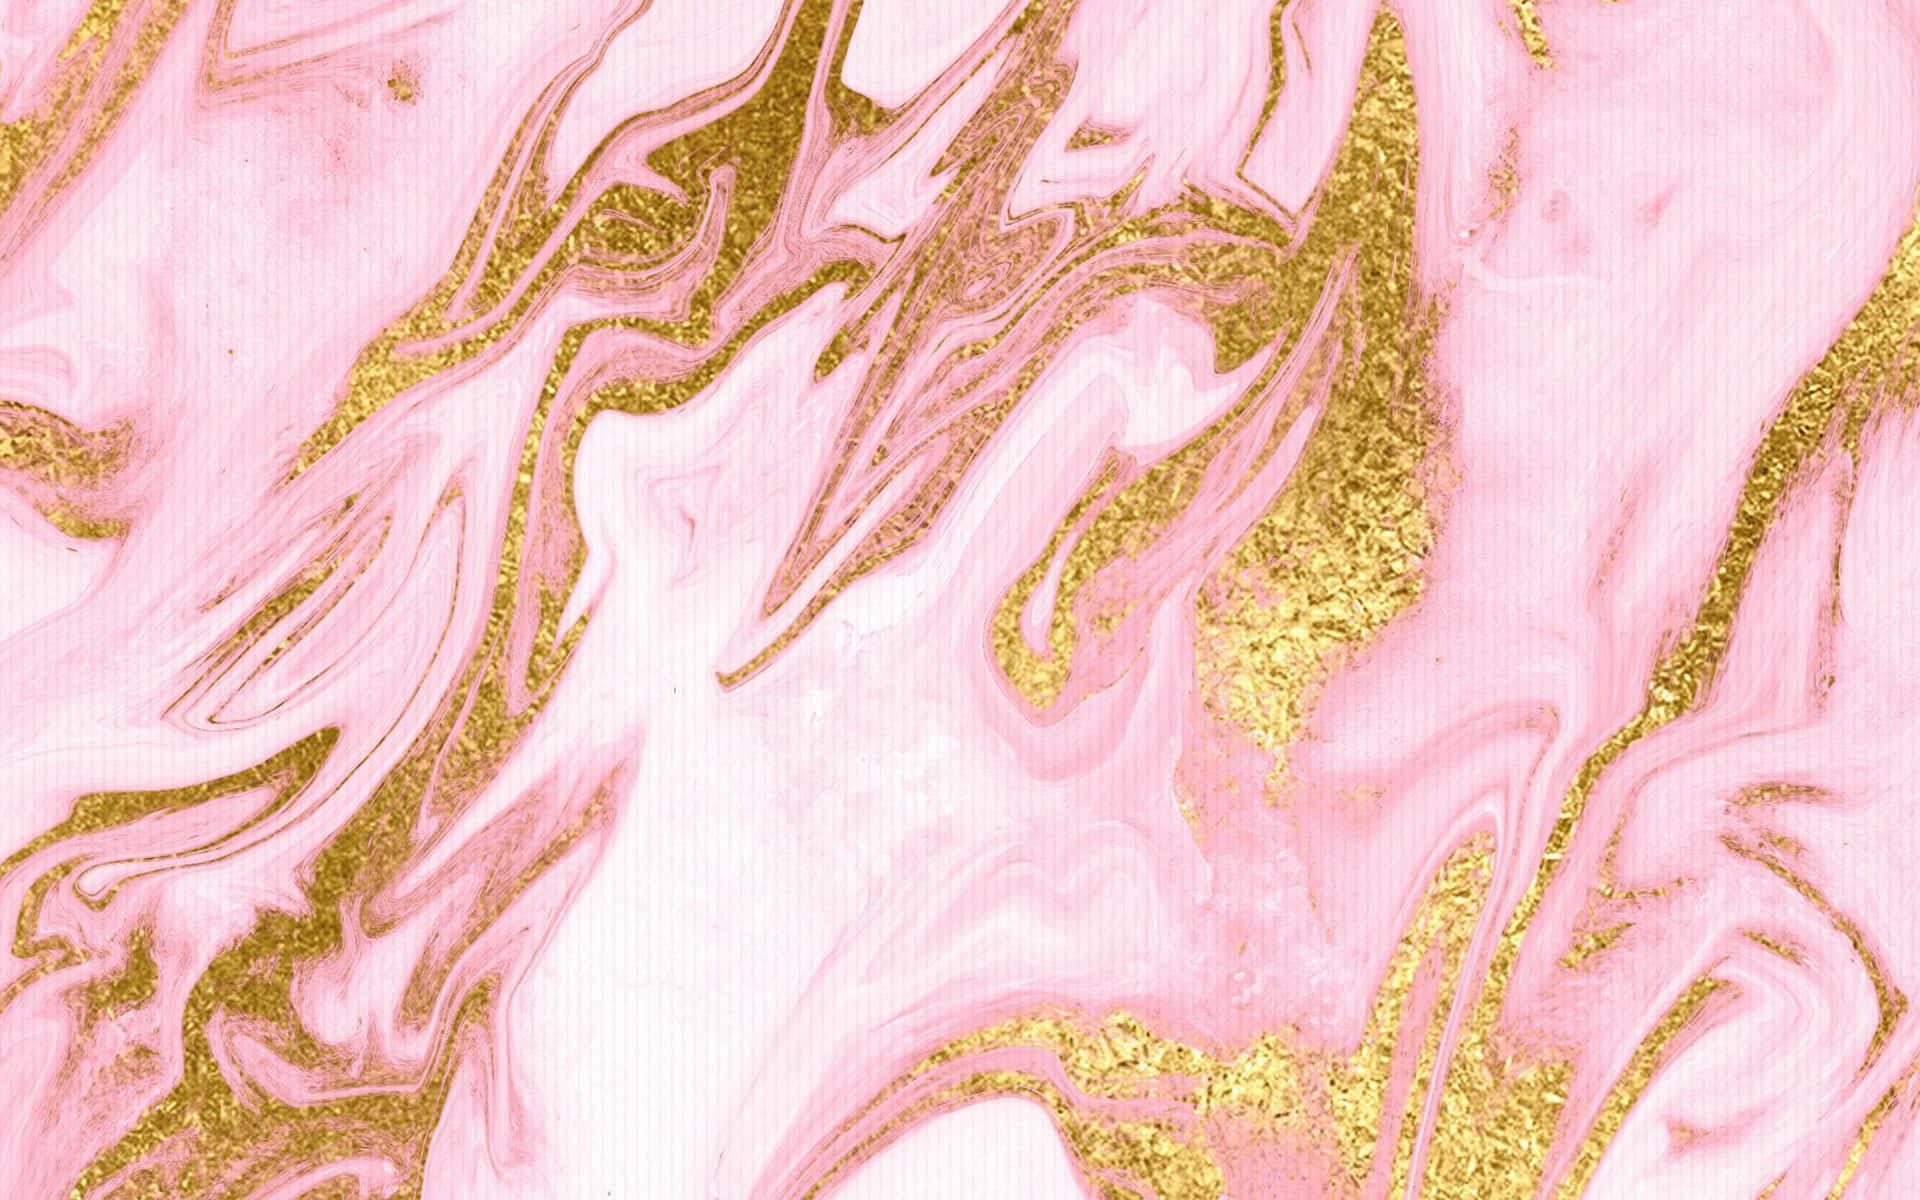 100+] Rose Gold Desktop Backgrounds